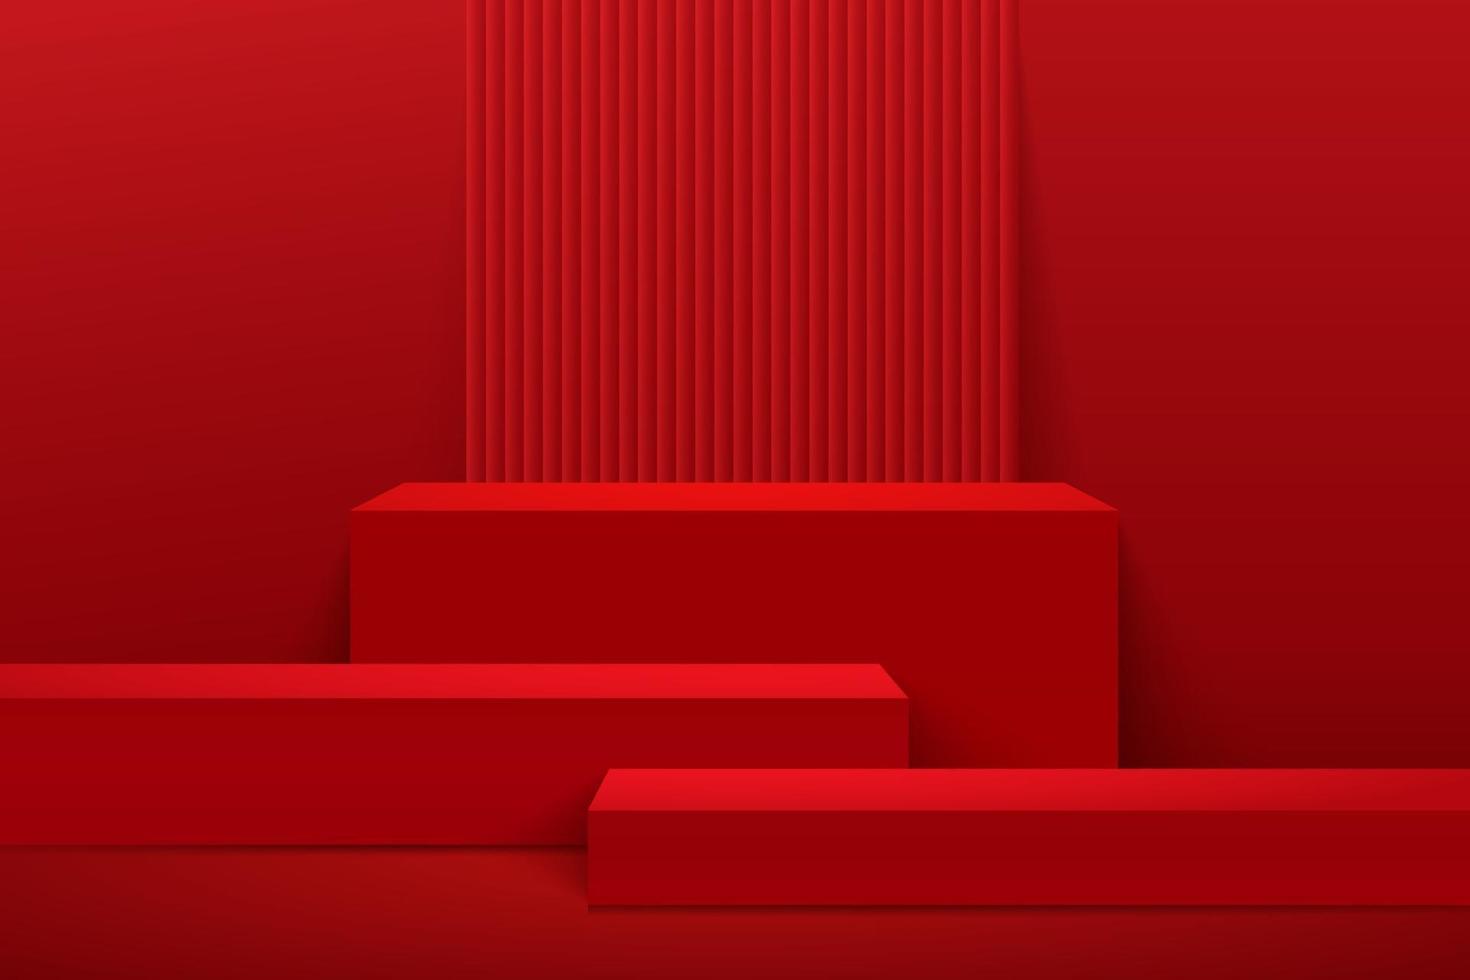 display cubo astratto per prodotto sul sito Web dal design moderno. rendering di sfondo con podio e scena di muro trama rossa minima, rendering 3d disegno di forma geometrica. stile orientale. illustrazione vettoriale